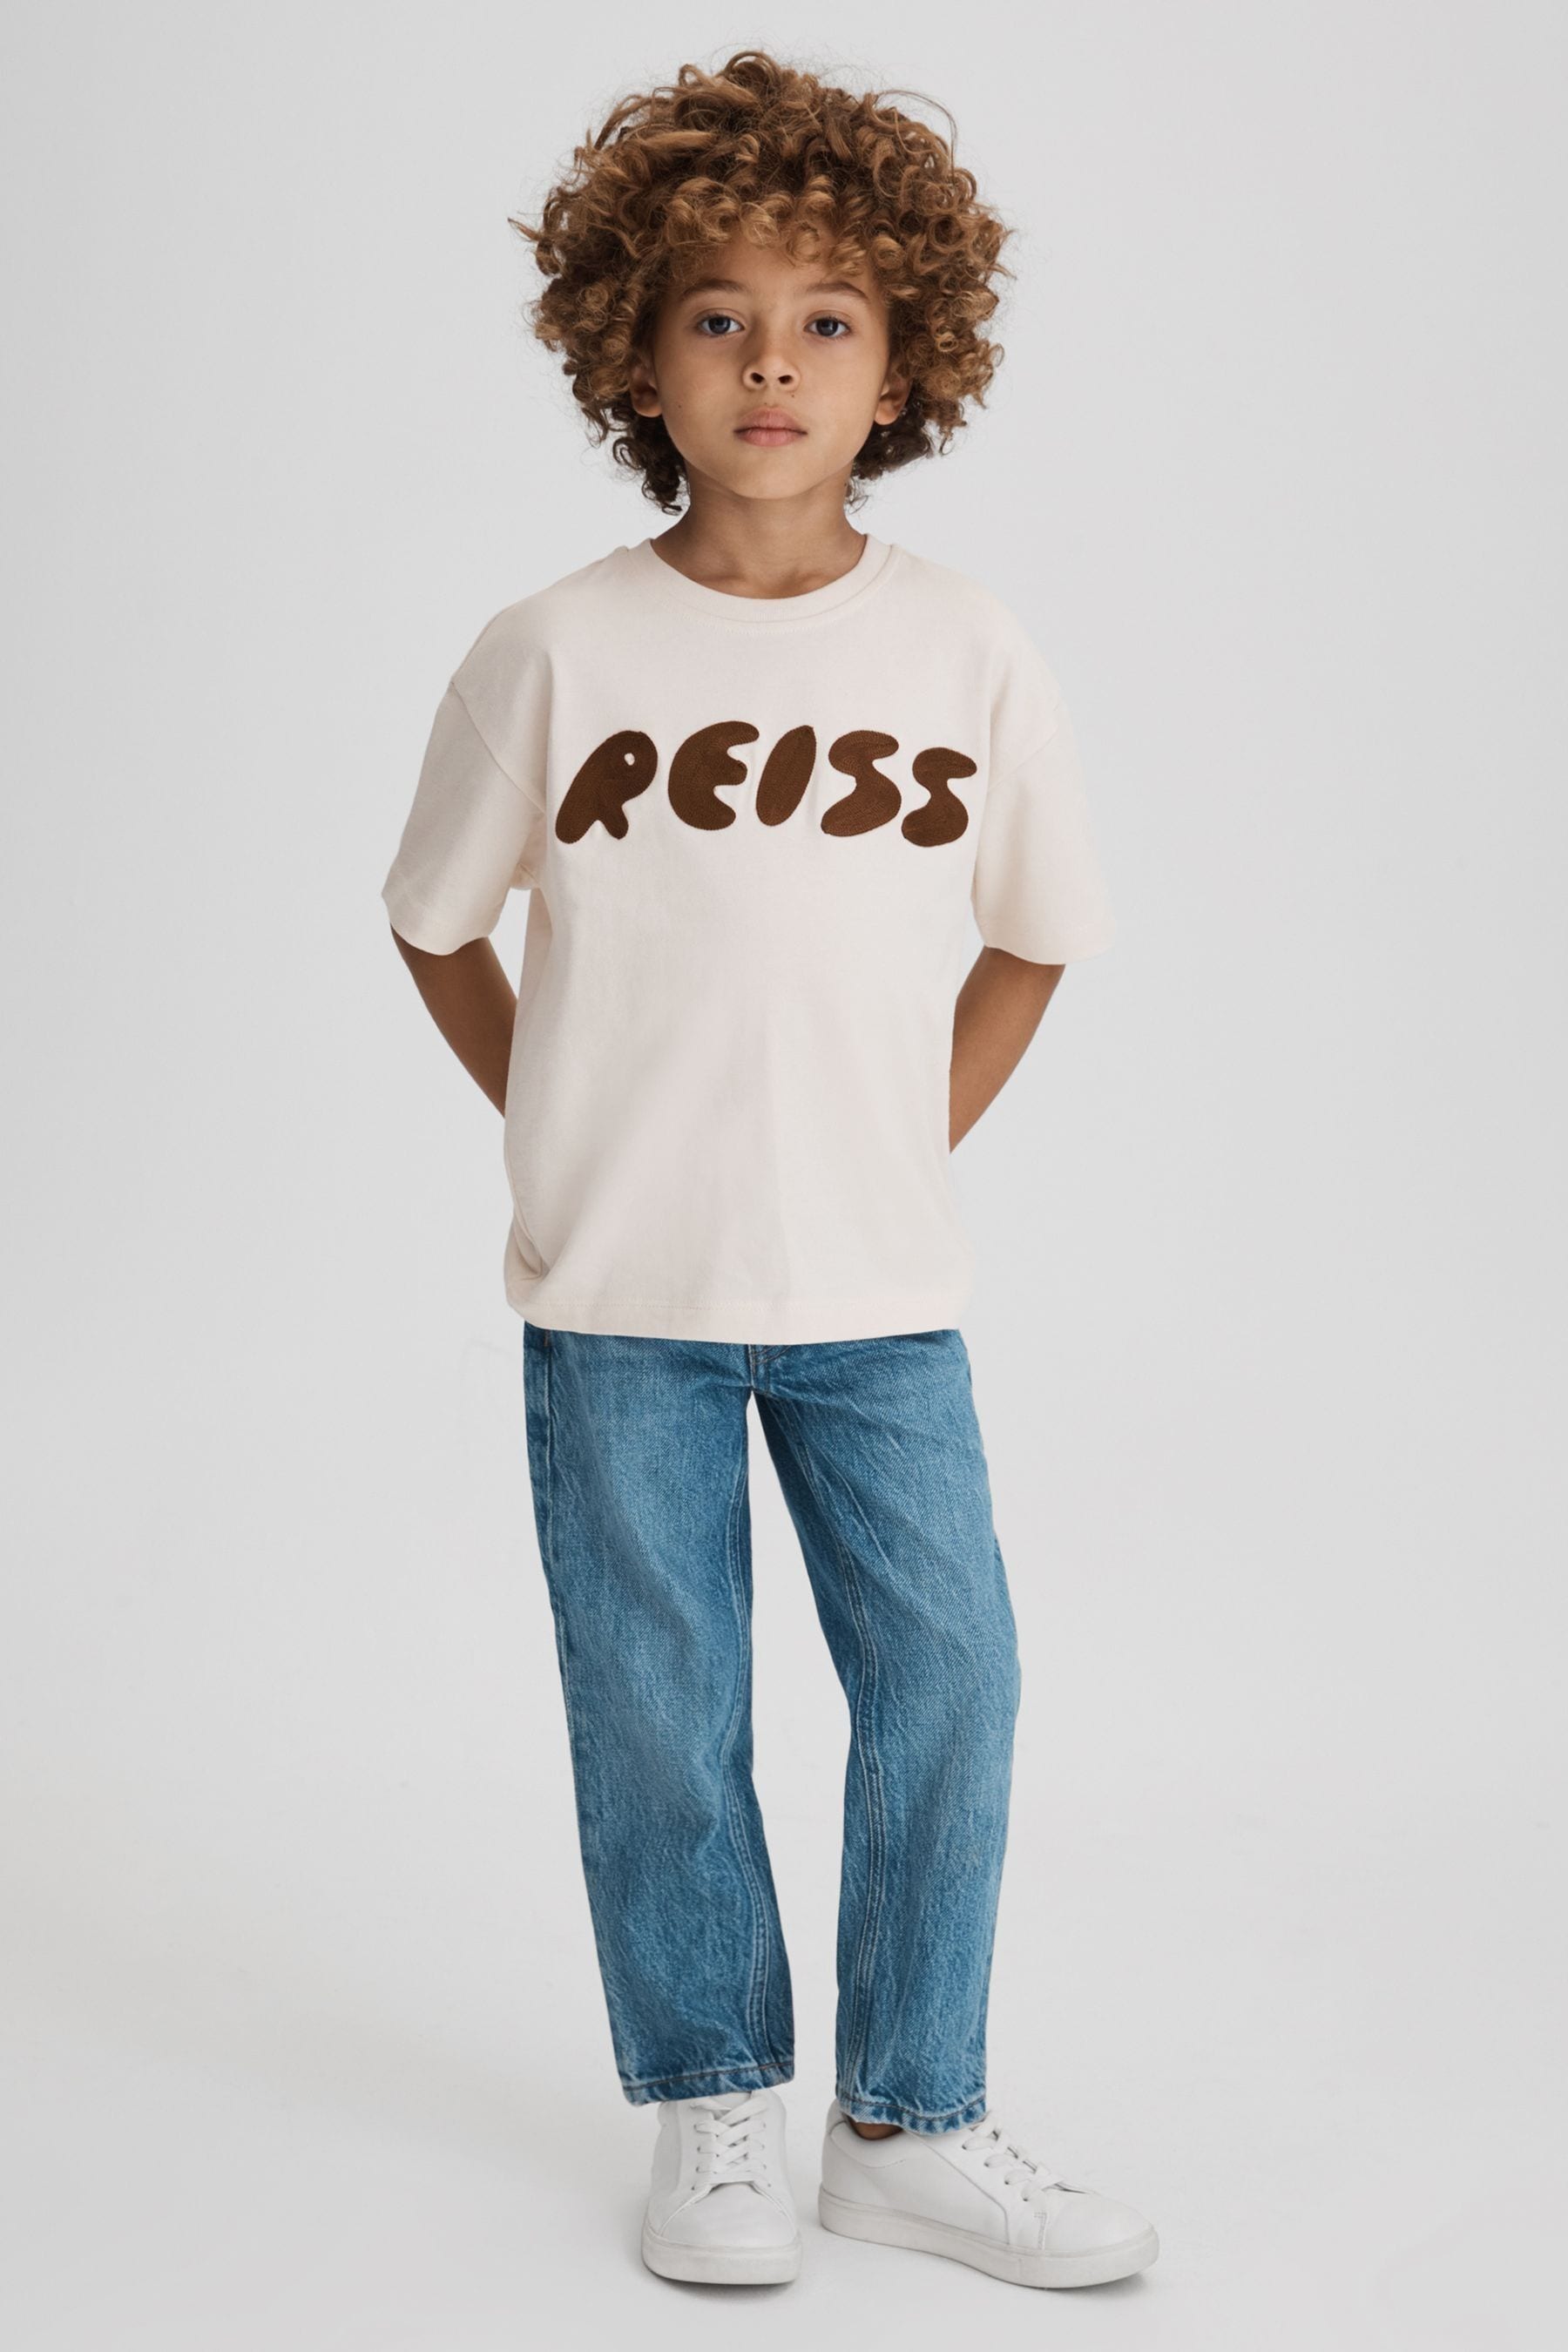 Reiss Kids' Sands - Ecru Senior Cotton Crew Neck Motif T-shirt, Uk 11-12 Yrs